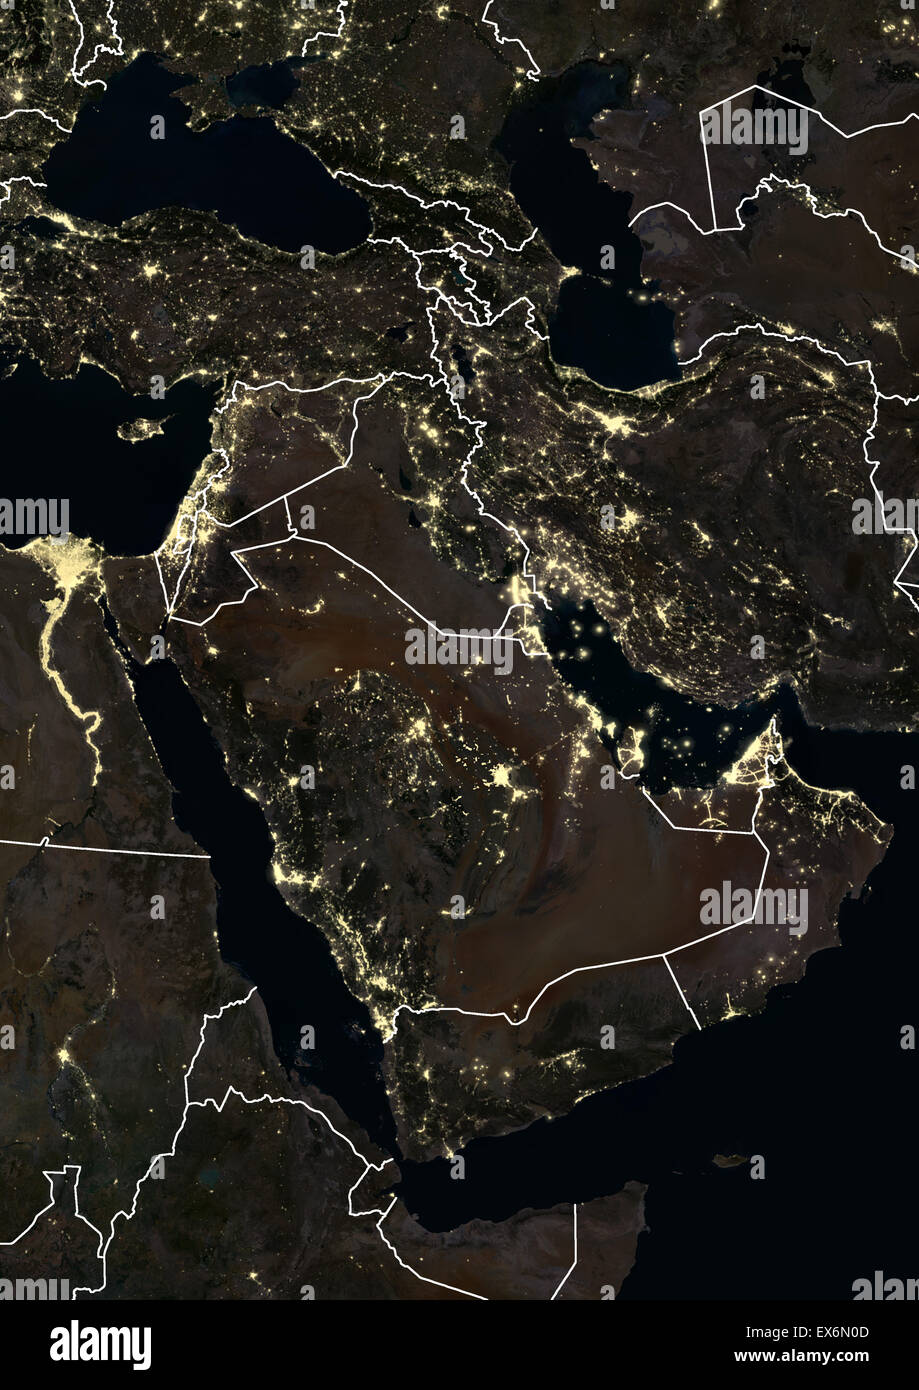 Nahen Osten nachts im Jahr 2012 mit Saudi Arabien. Dieses Satellitenbild mit Landesgrenzen zeigt städtische und industrielle Beleuchtung. Stockfoto